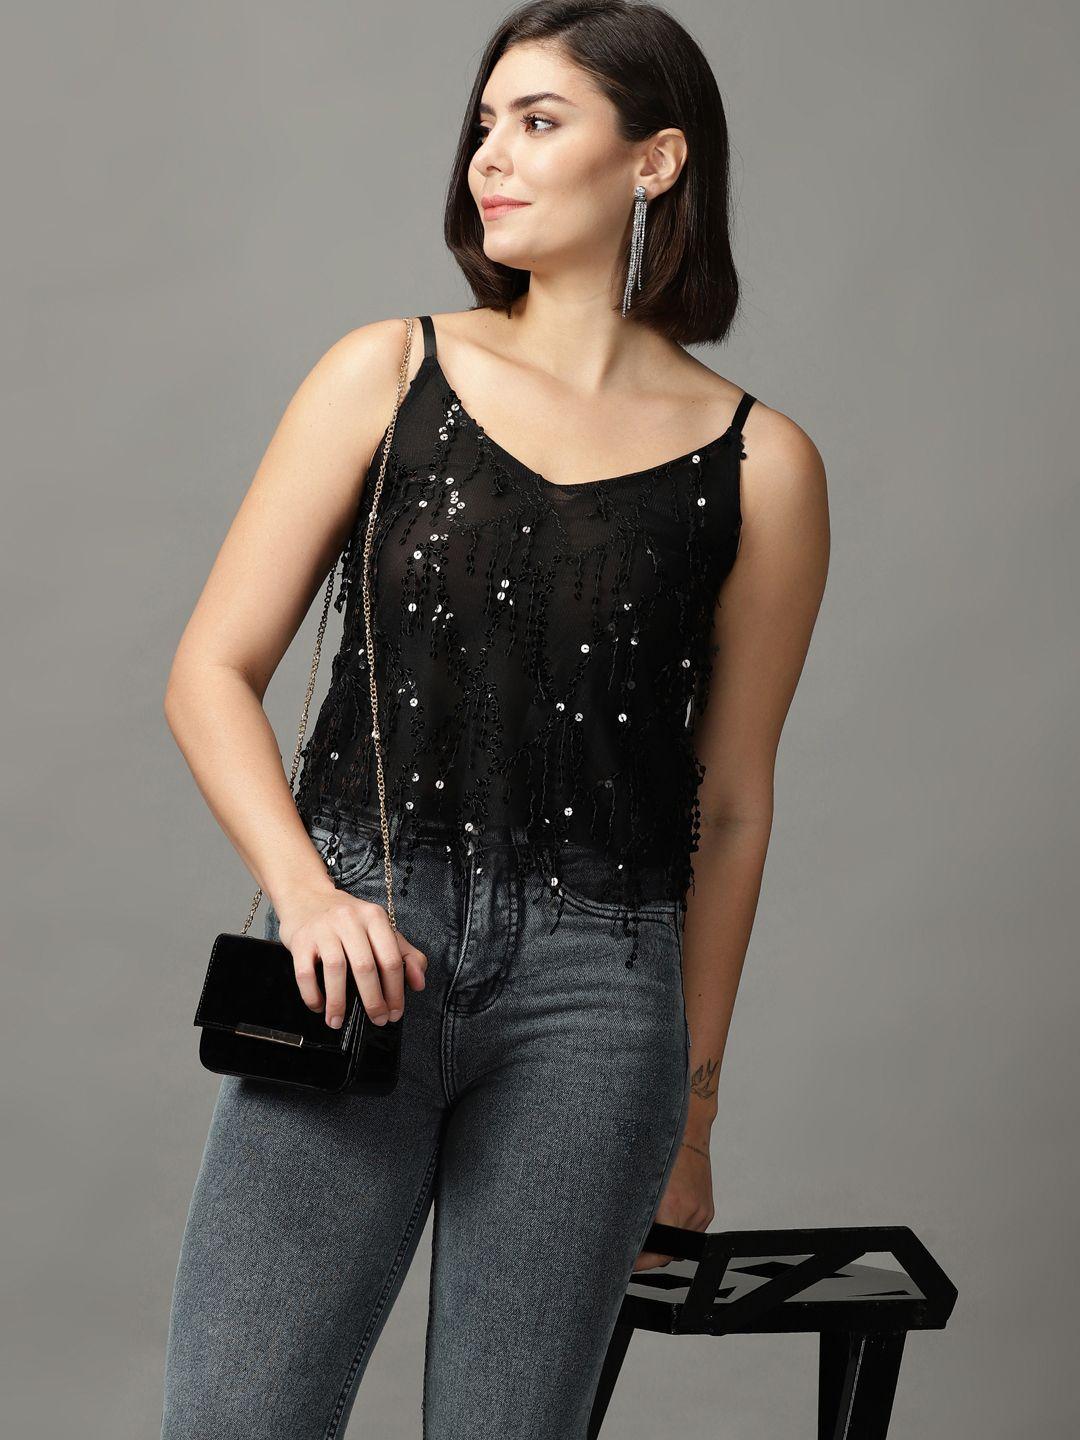 showoff black sequined embellished shoulder straps net top